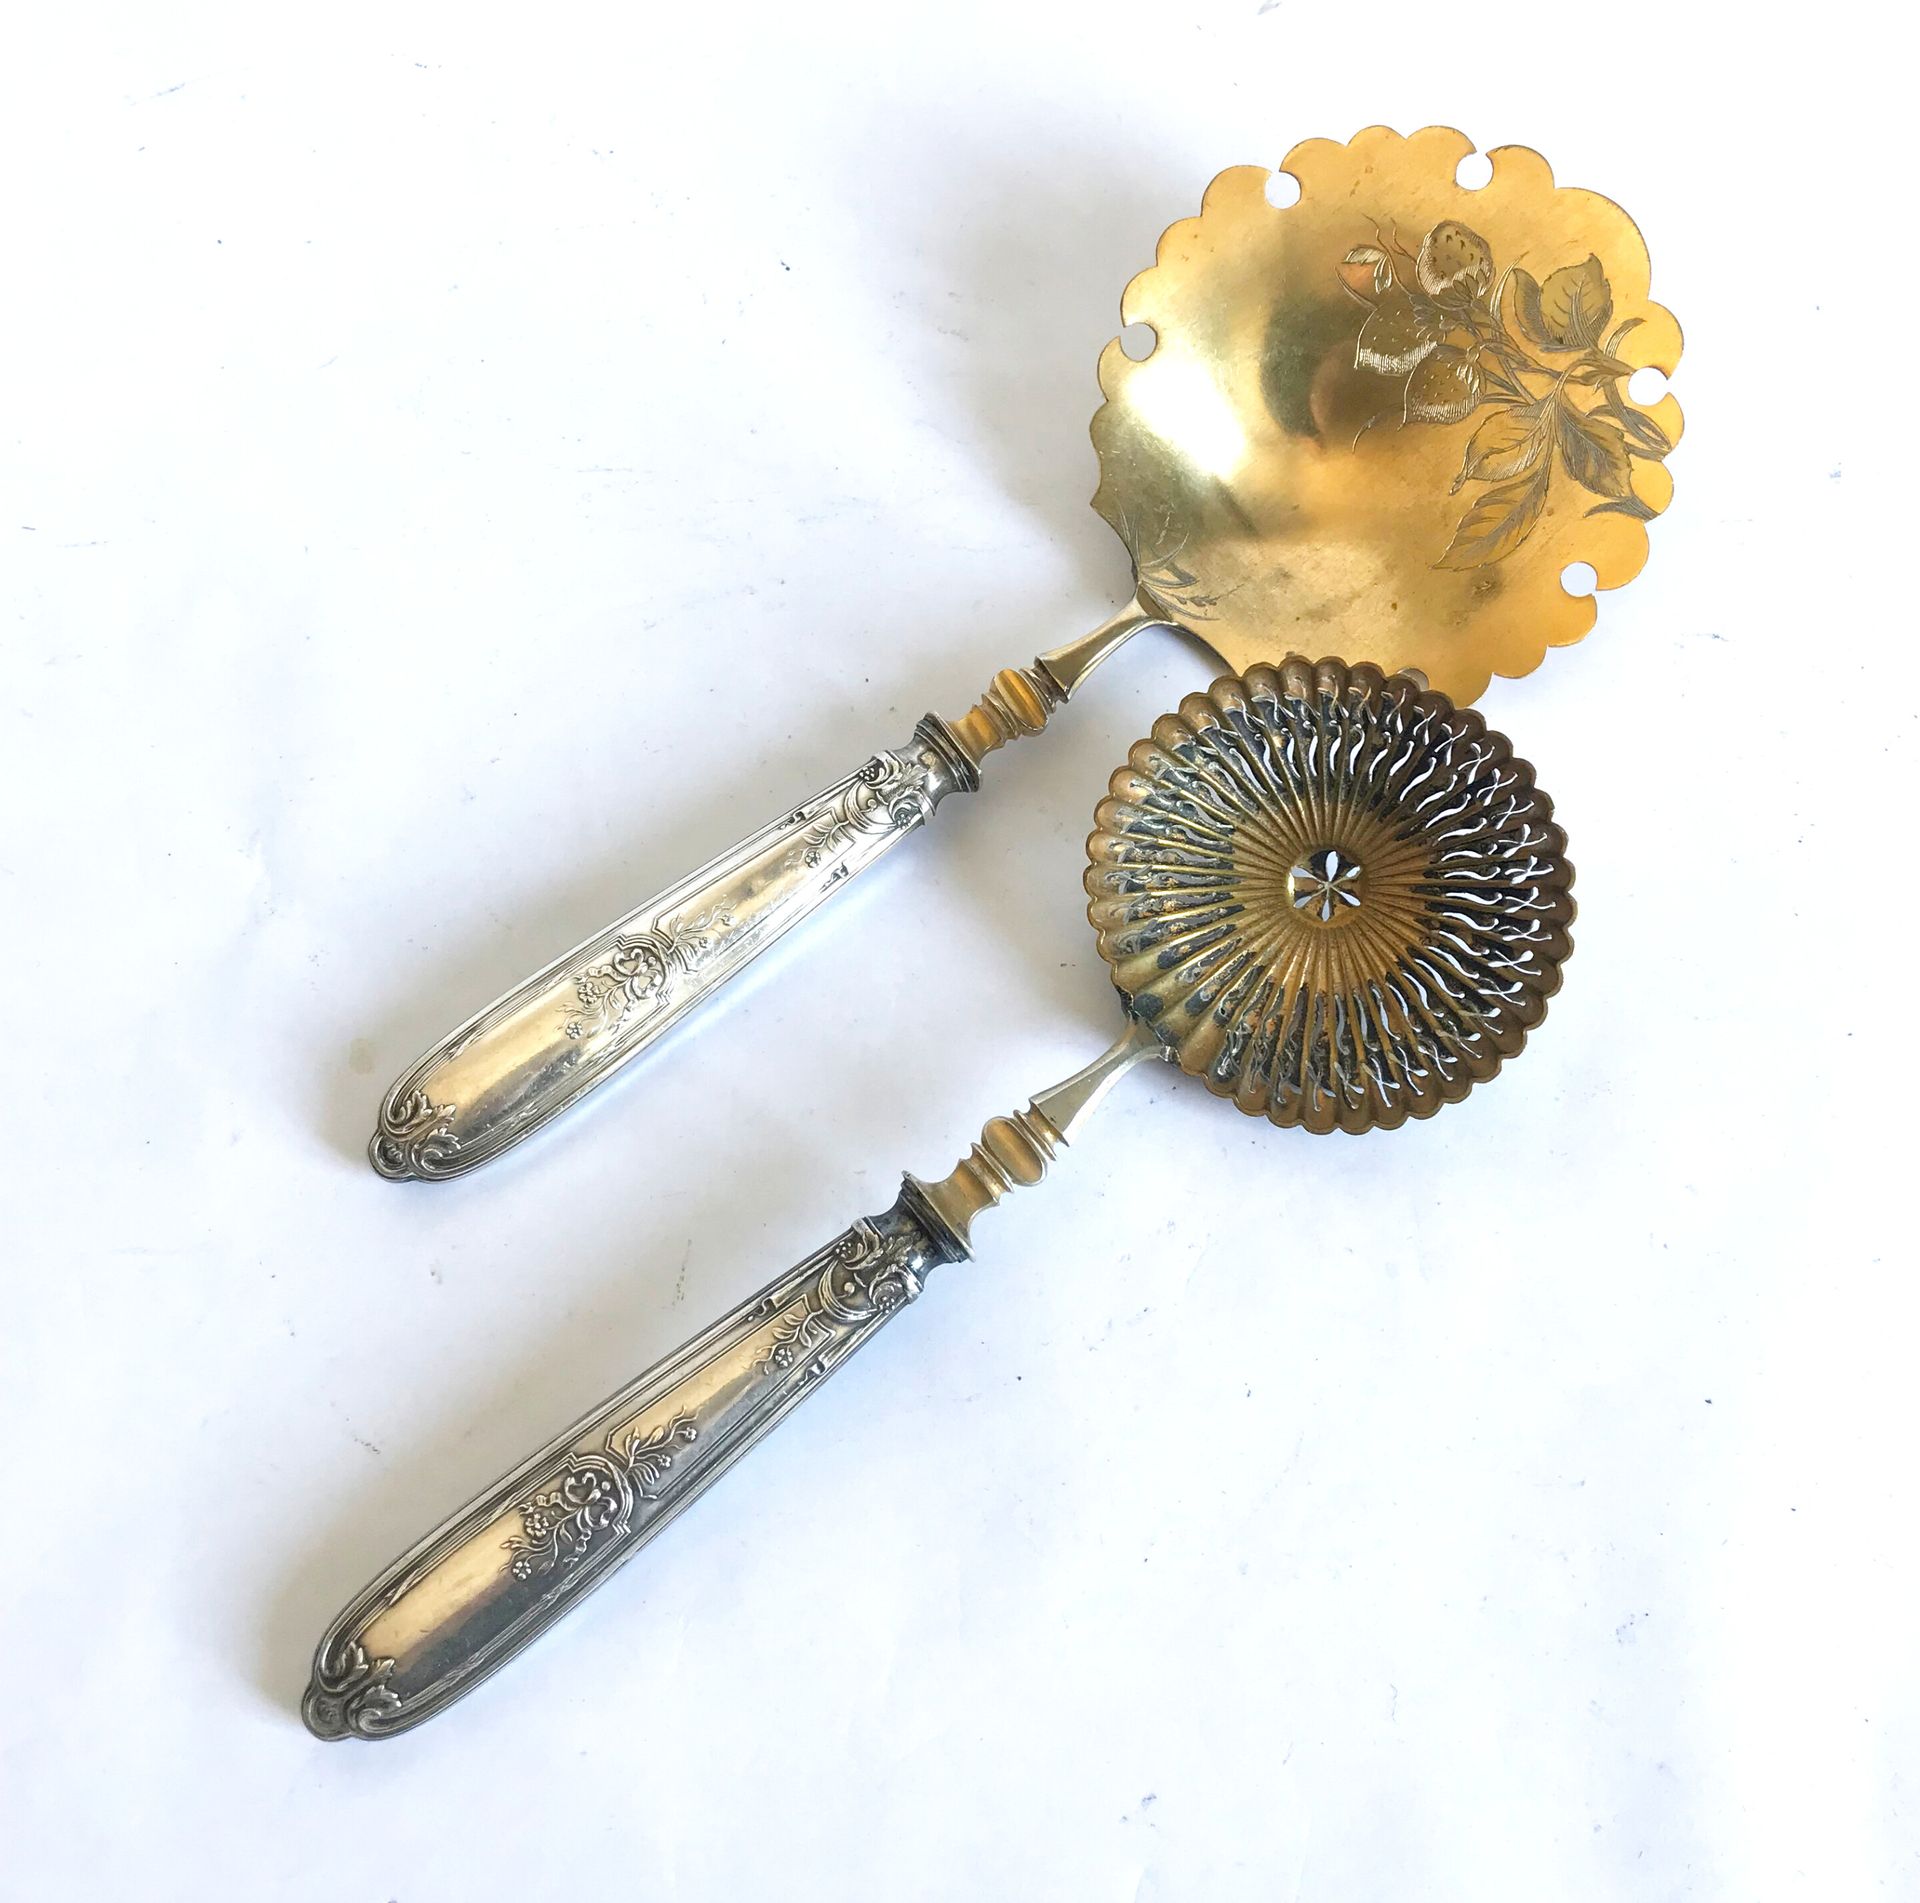 Null 鎏金金属冰激凌勺和糖勺，银质手柄上模压并刻有路易十六的图案。19世纪末-20世纪初

磨损的古铜色